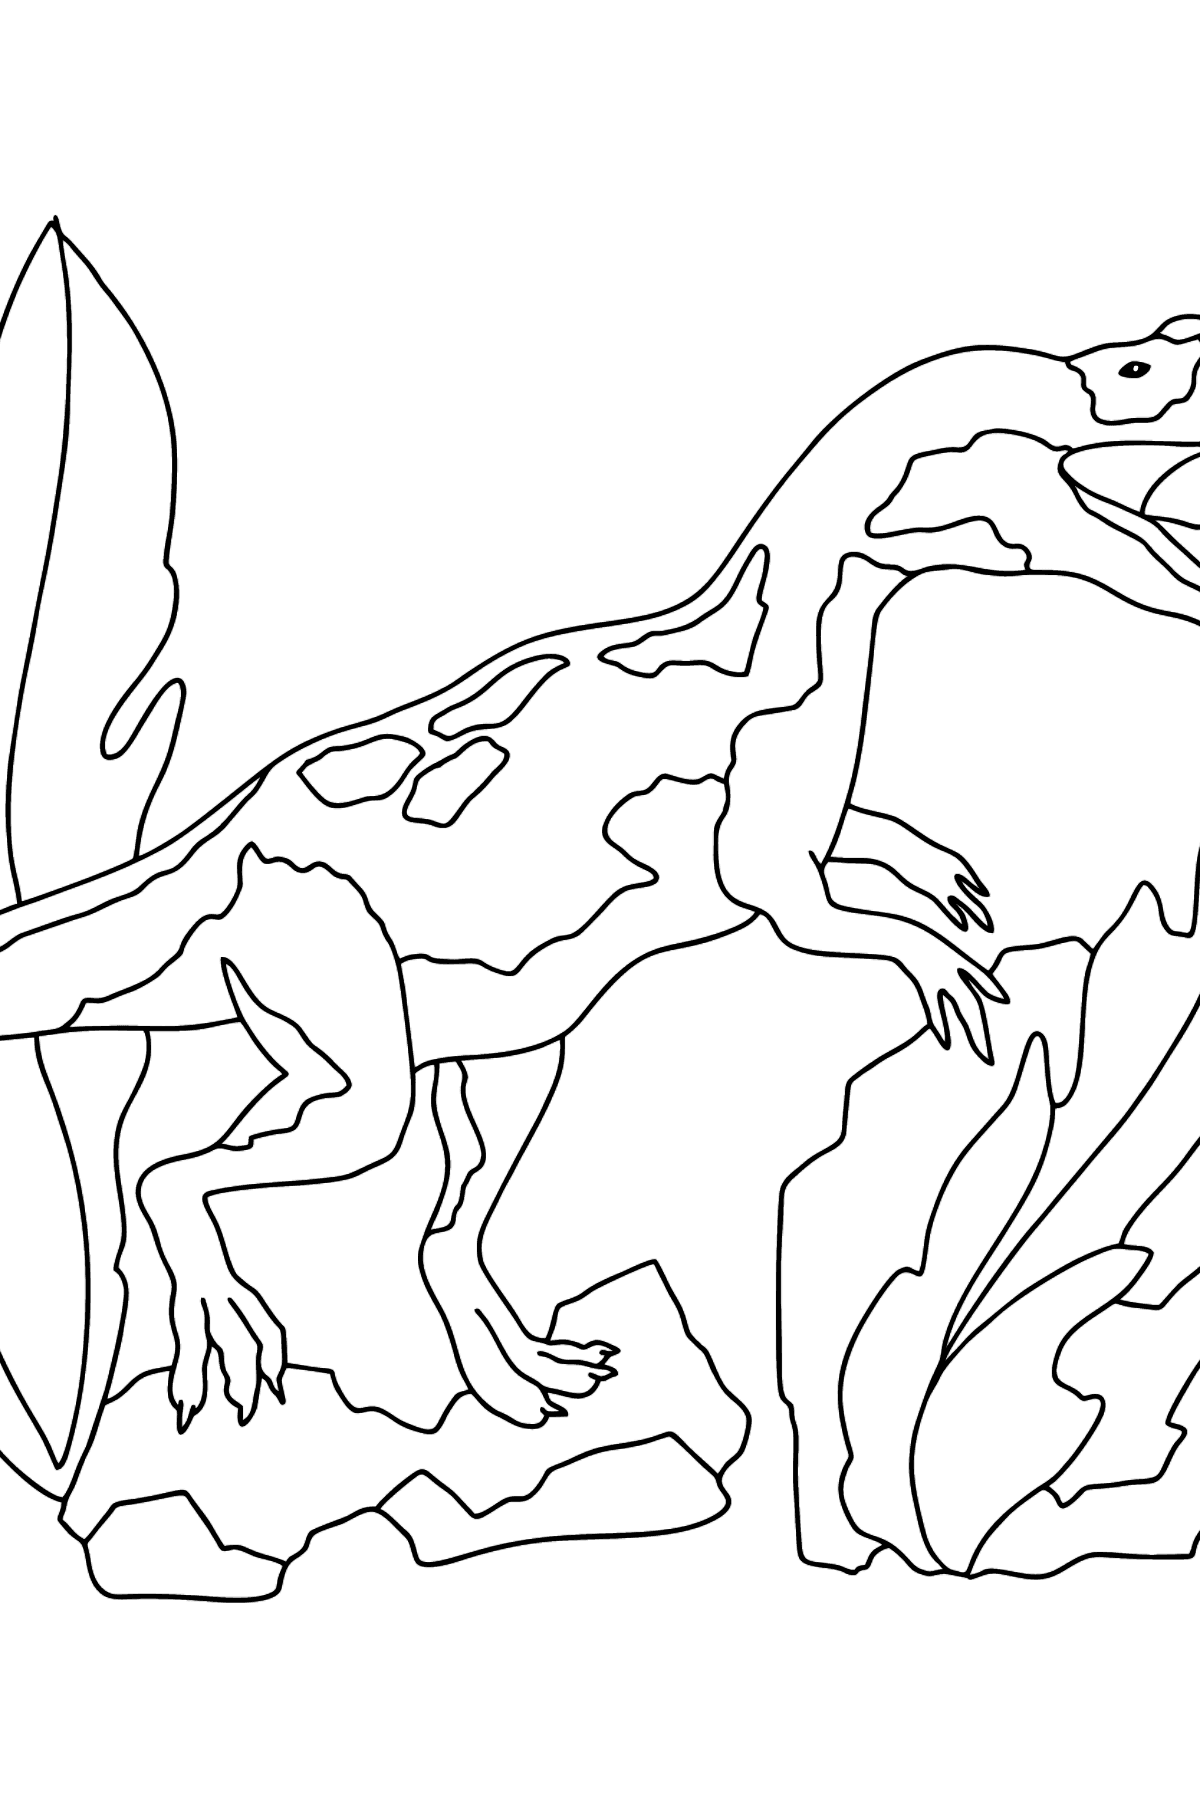 Desenho para colorir de Dinossauro Jurássico (difícil) - Imagens para Colorir para Crianças